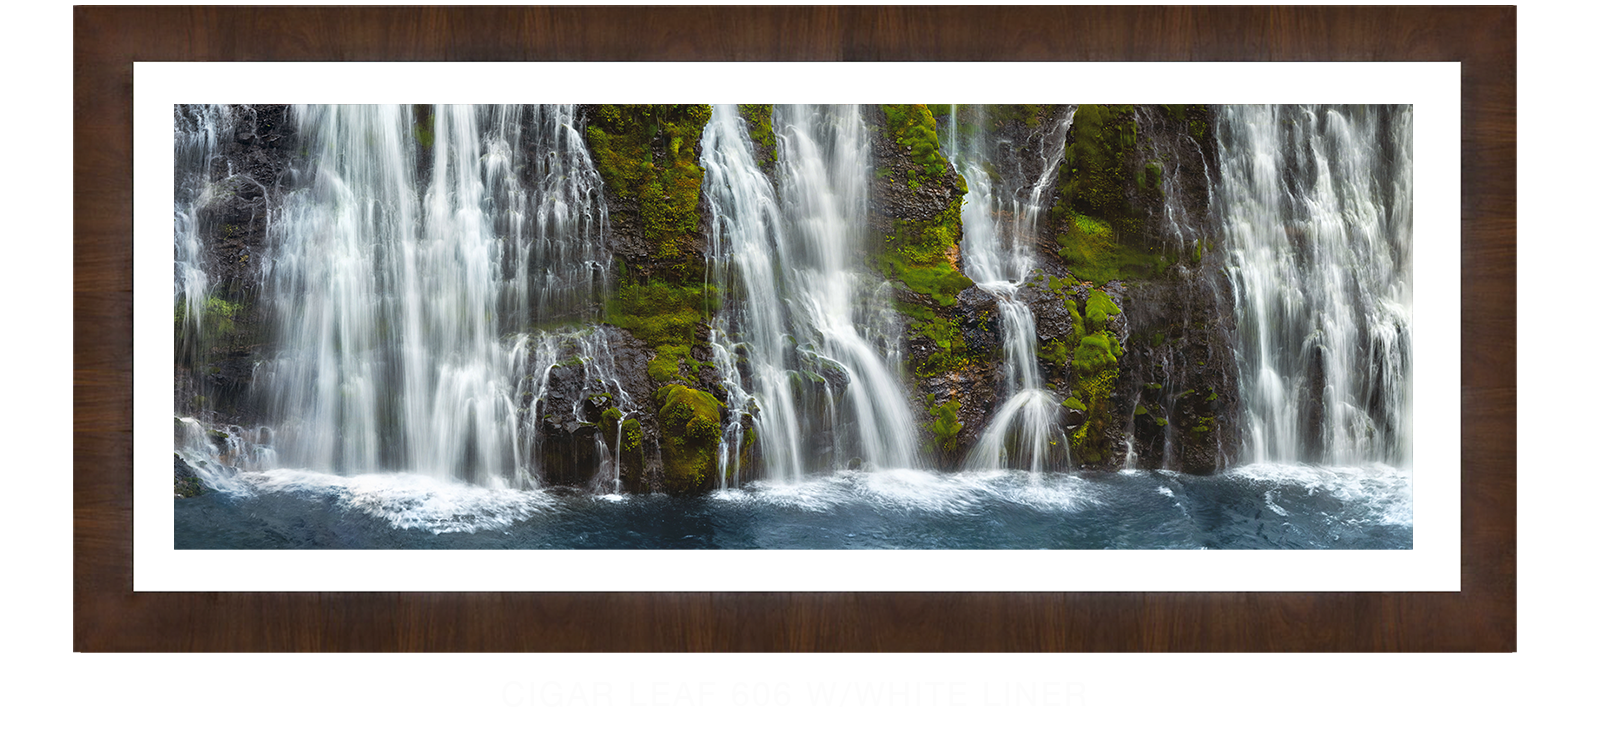 21_Cigar Leaf 606 w_Wht Liner